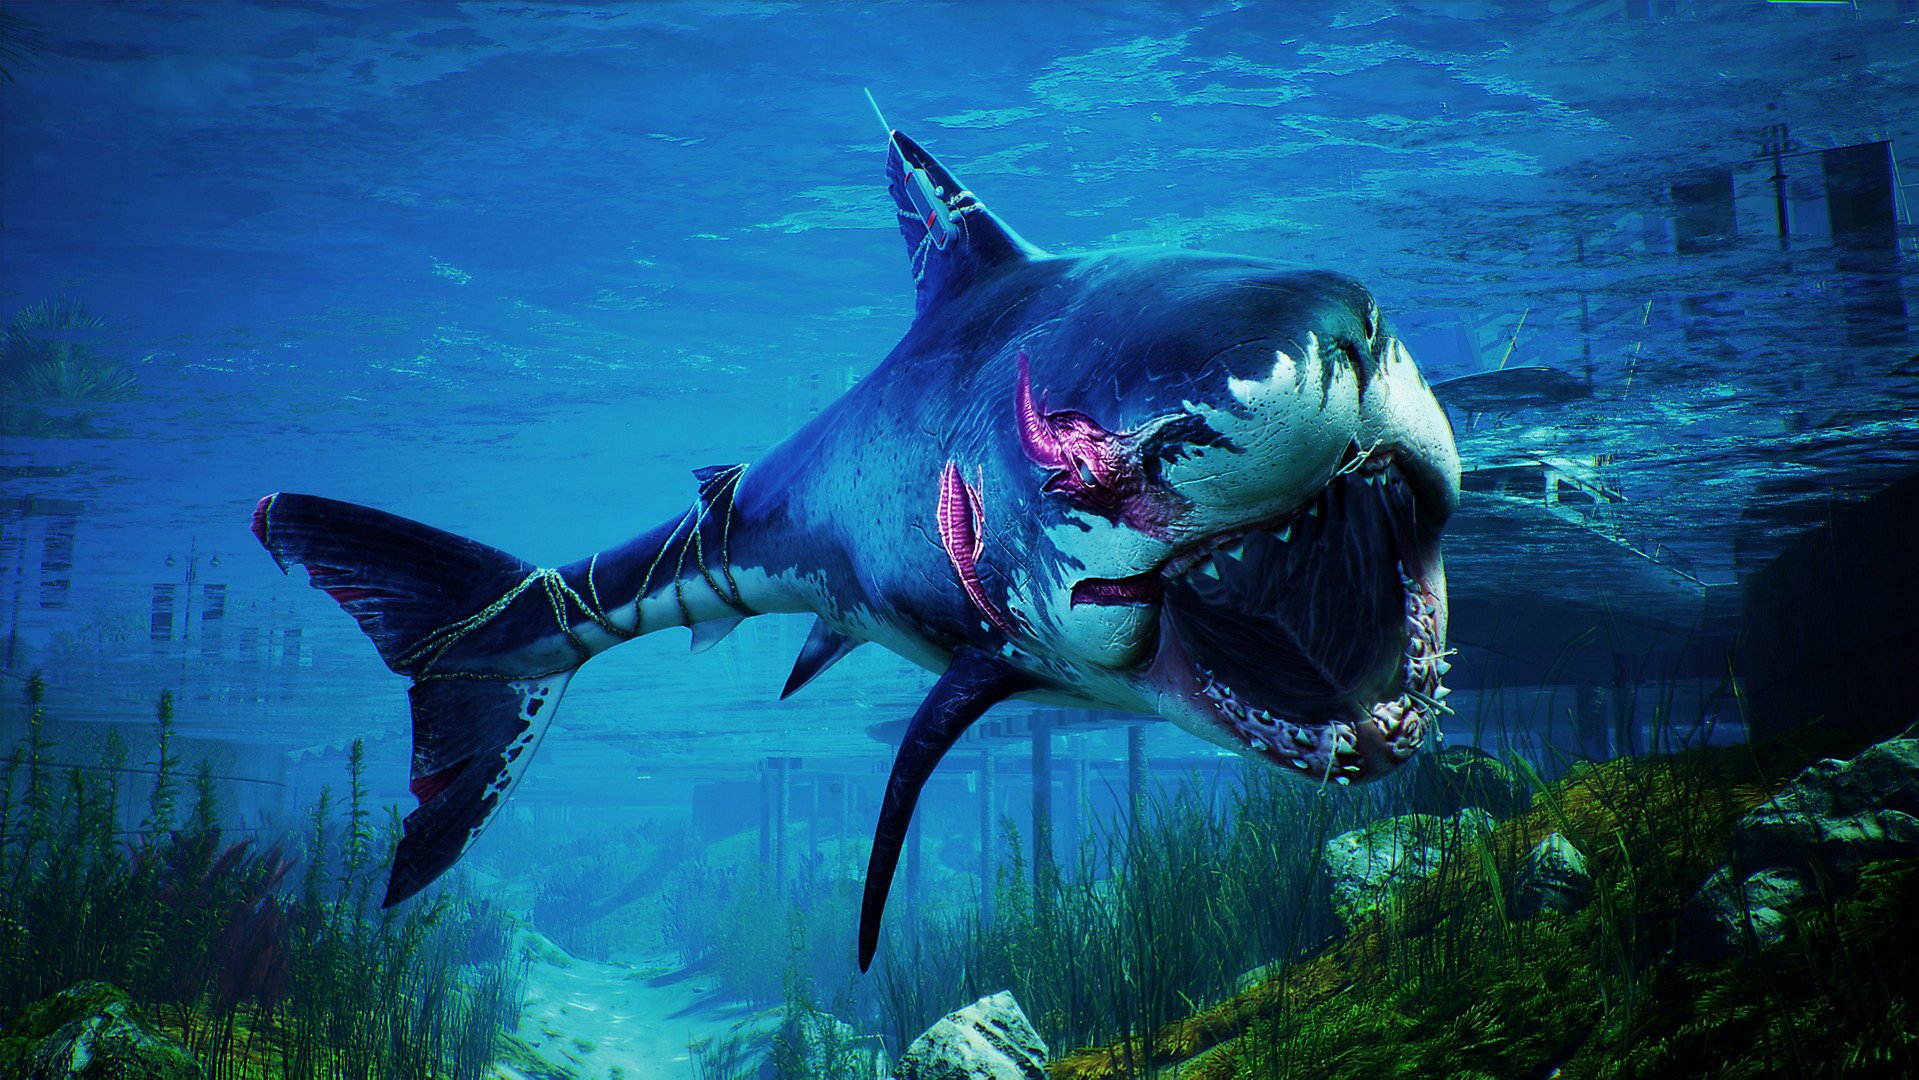 Ao evoluir a criatura dos mares, ela ganha diferentes aspectos físicos.